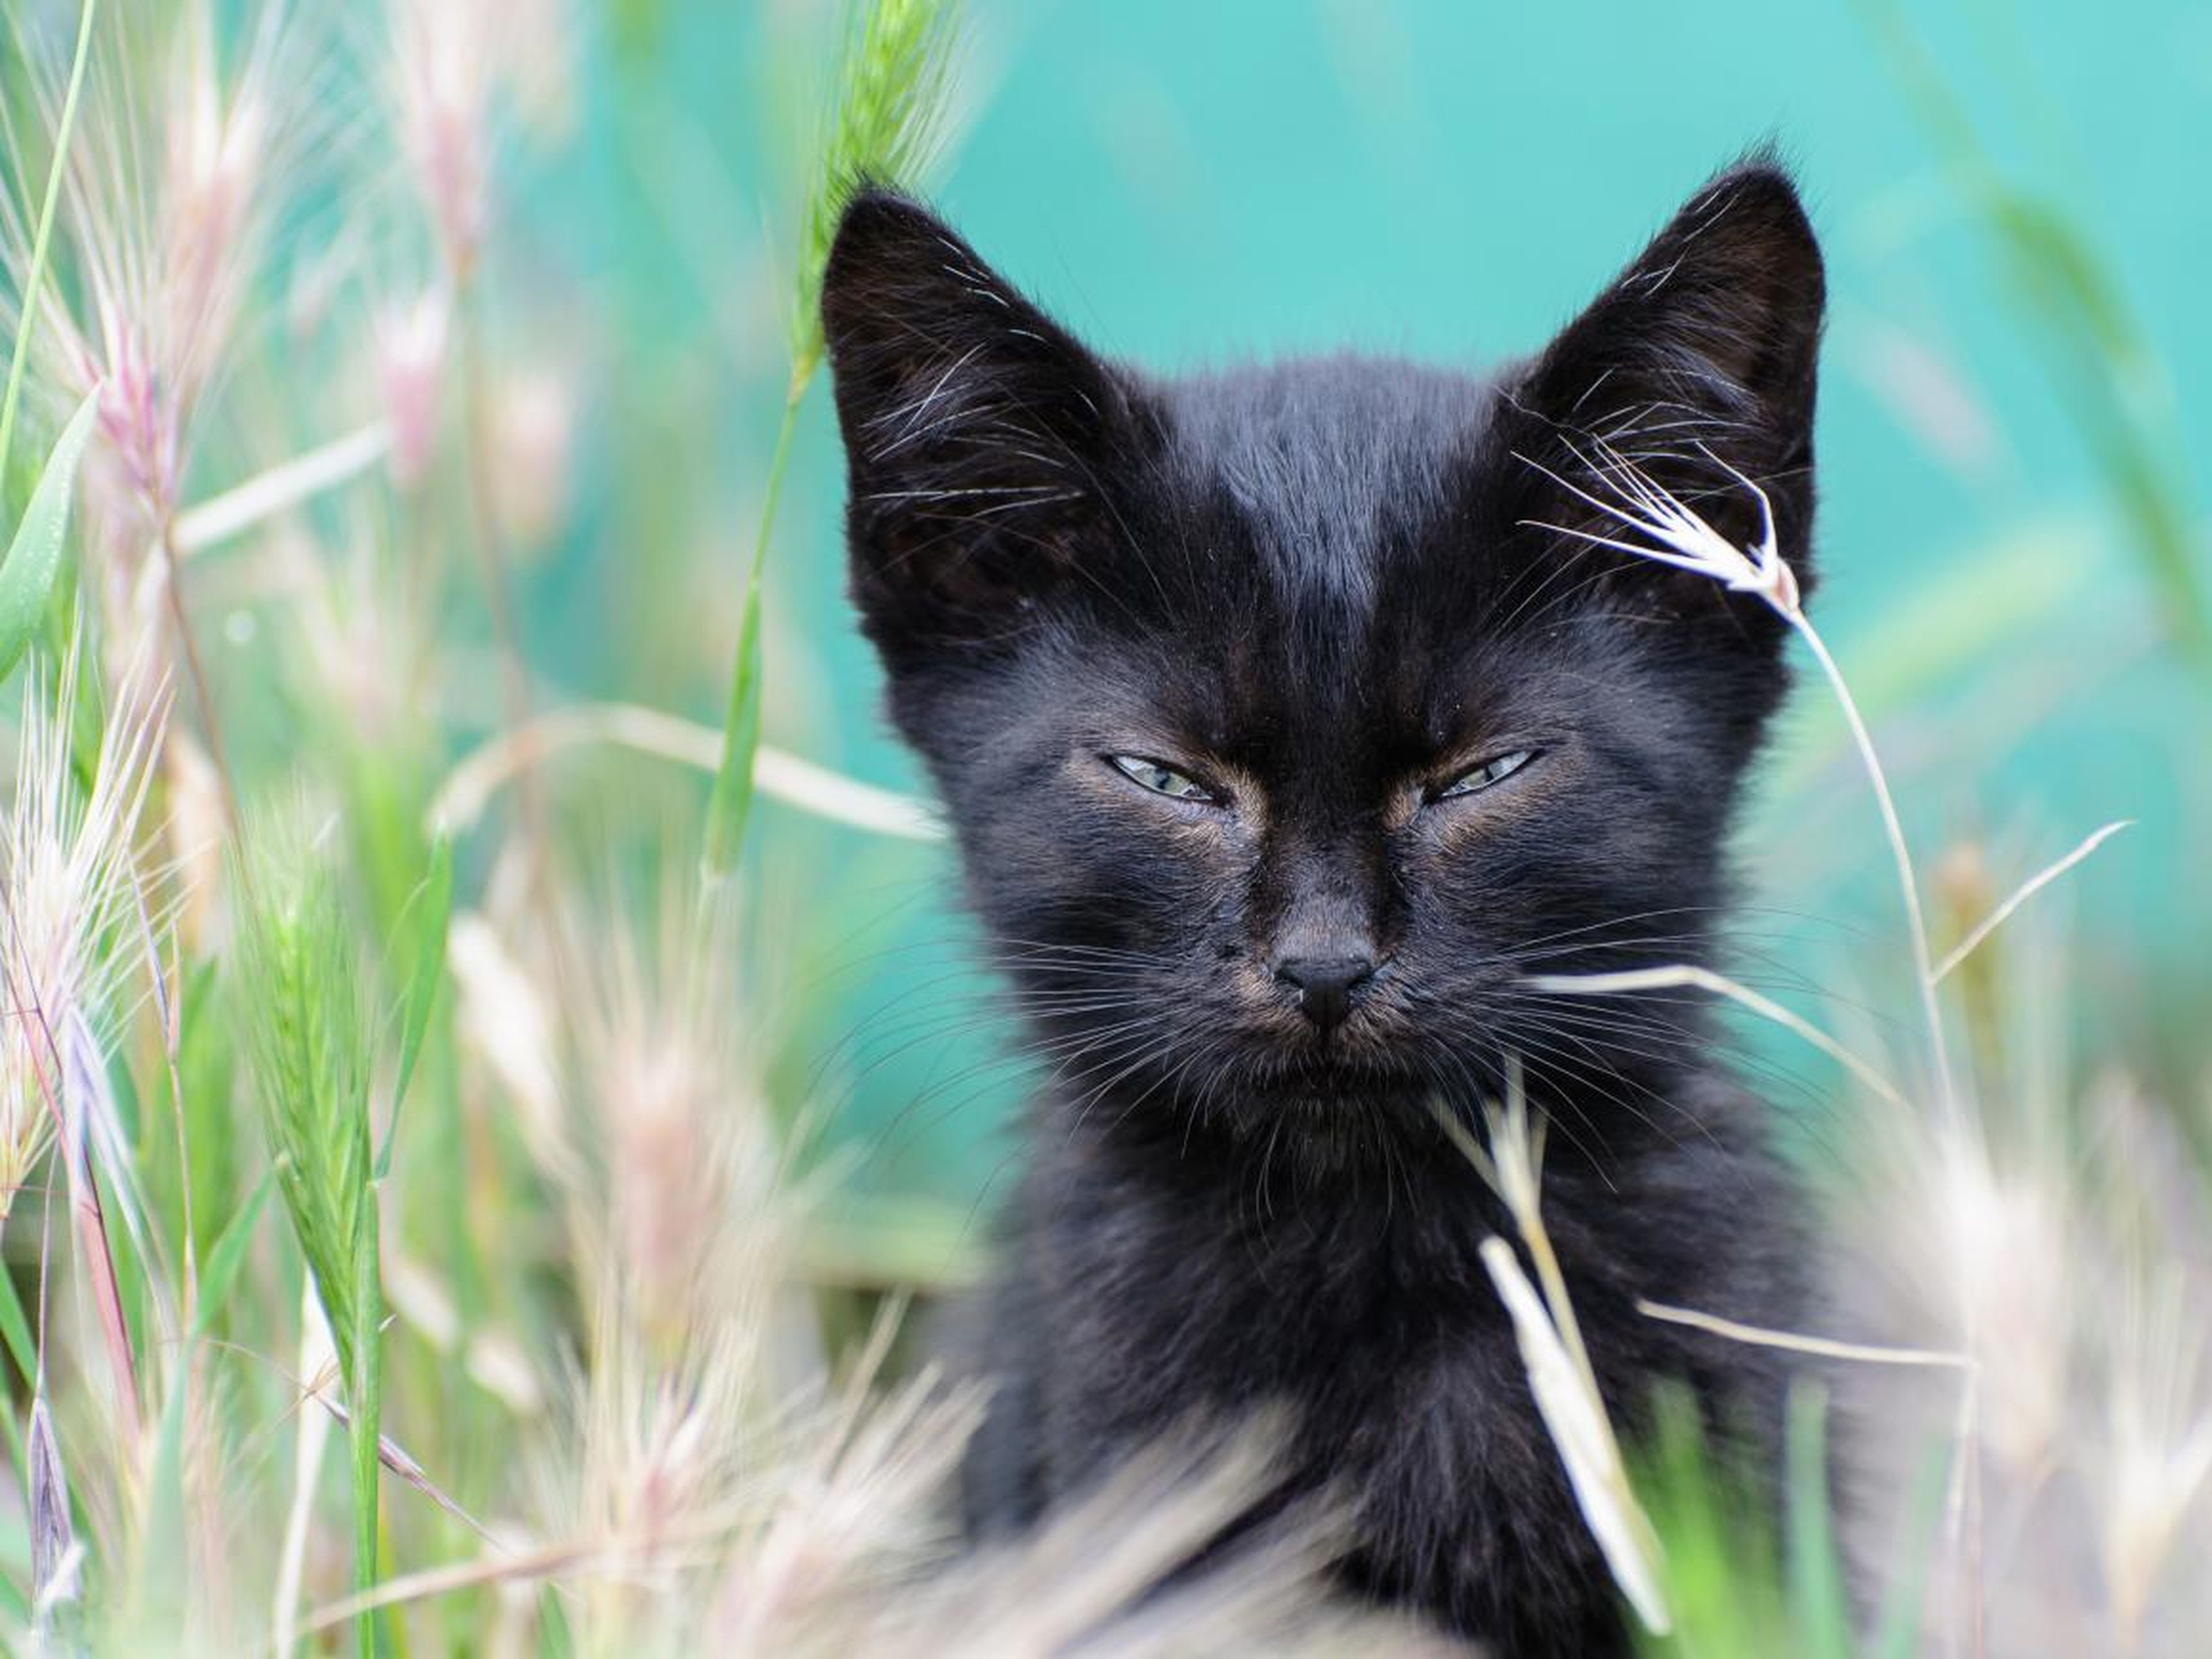 Este gato con el ceño fruncido parece estar tremendamente molesto.